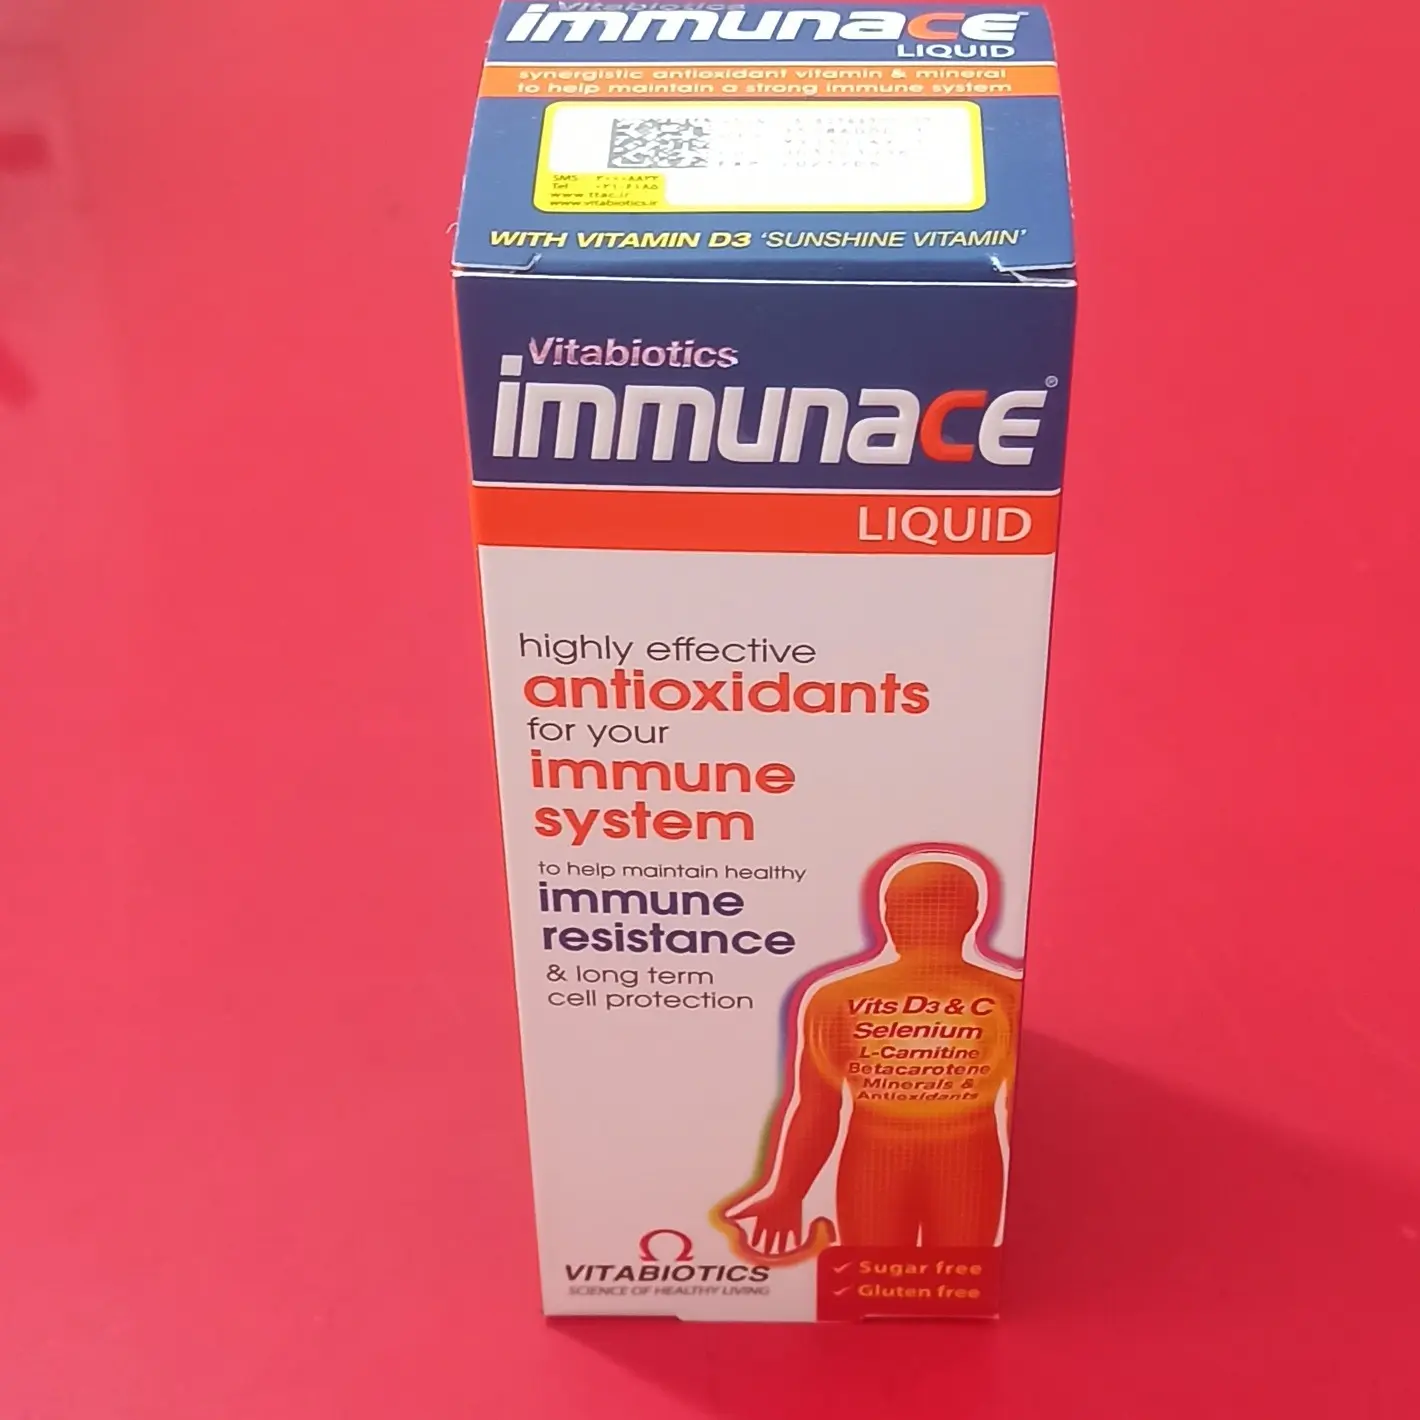 شربت ایمیونس ویتابیوتیکس 200 میلی لیتر Vitabiotics Immunace Liquid 200 ml